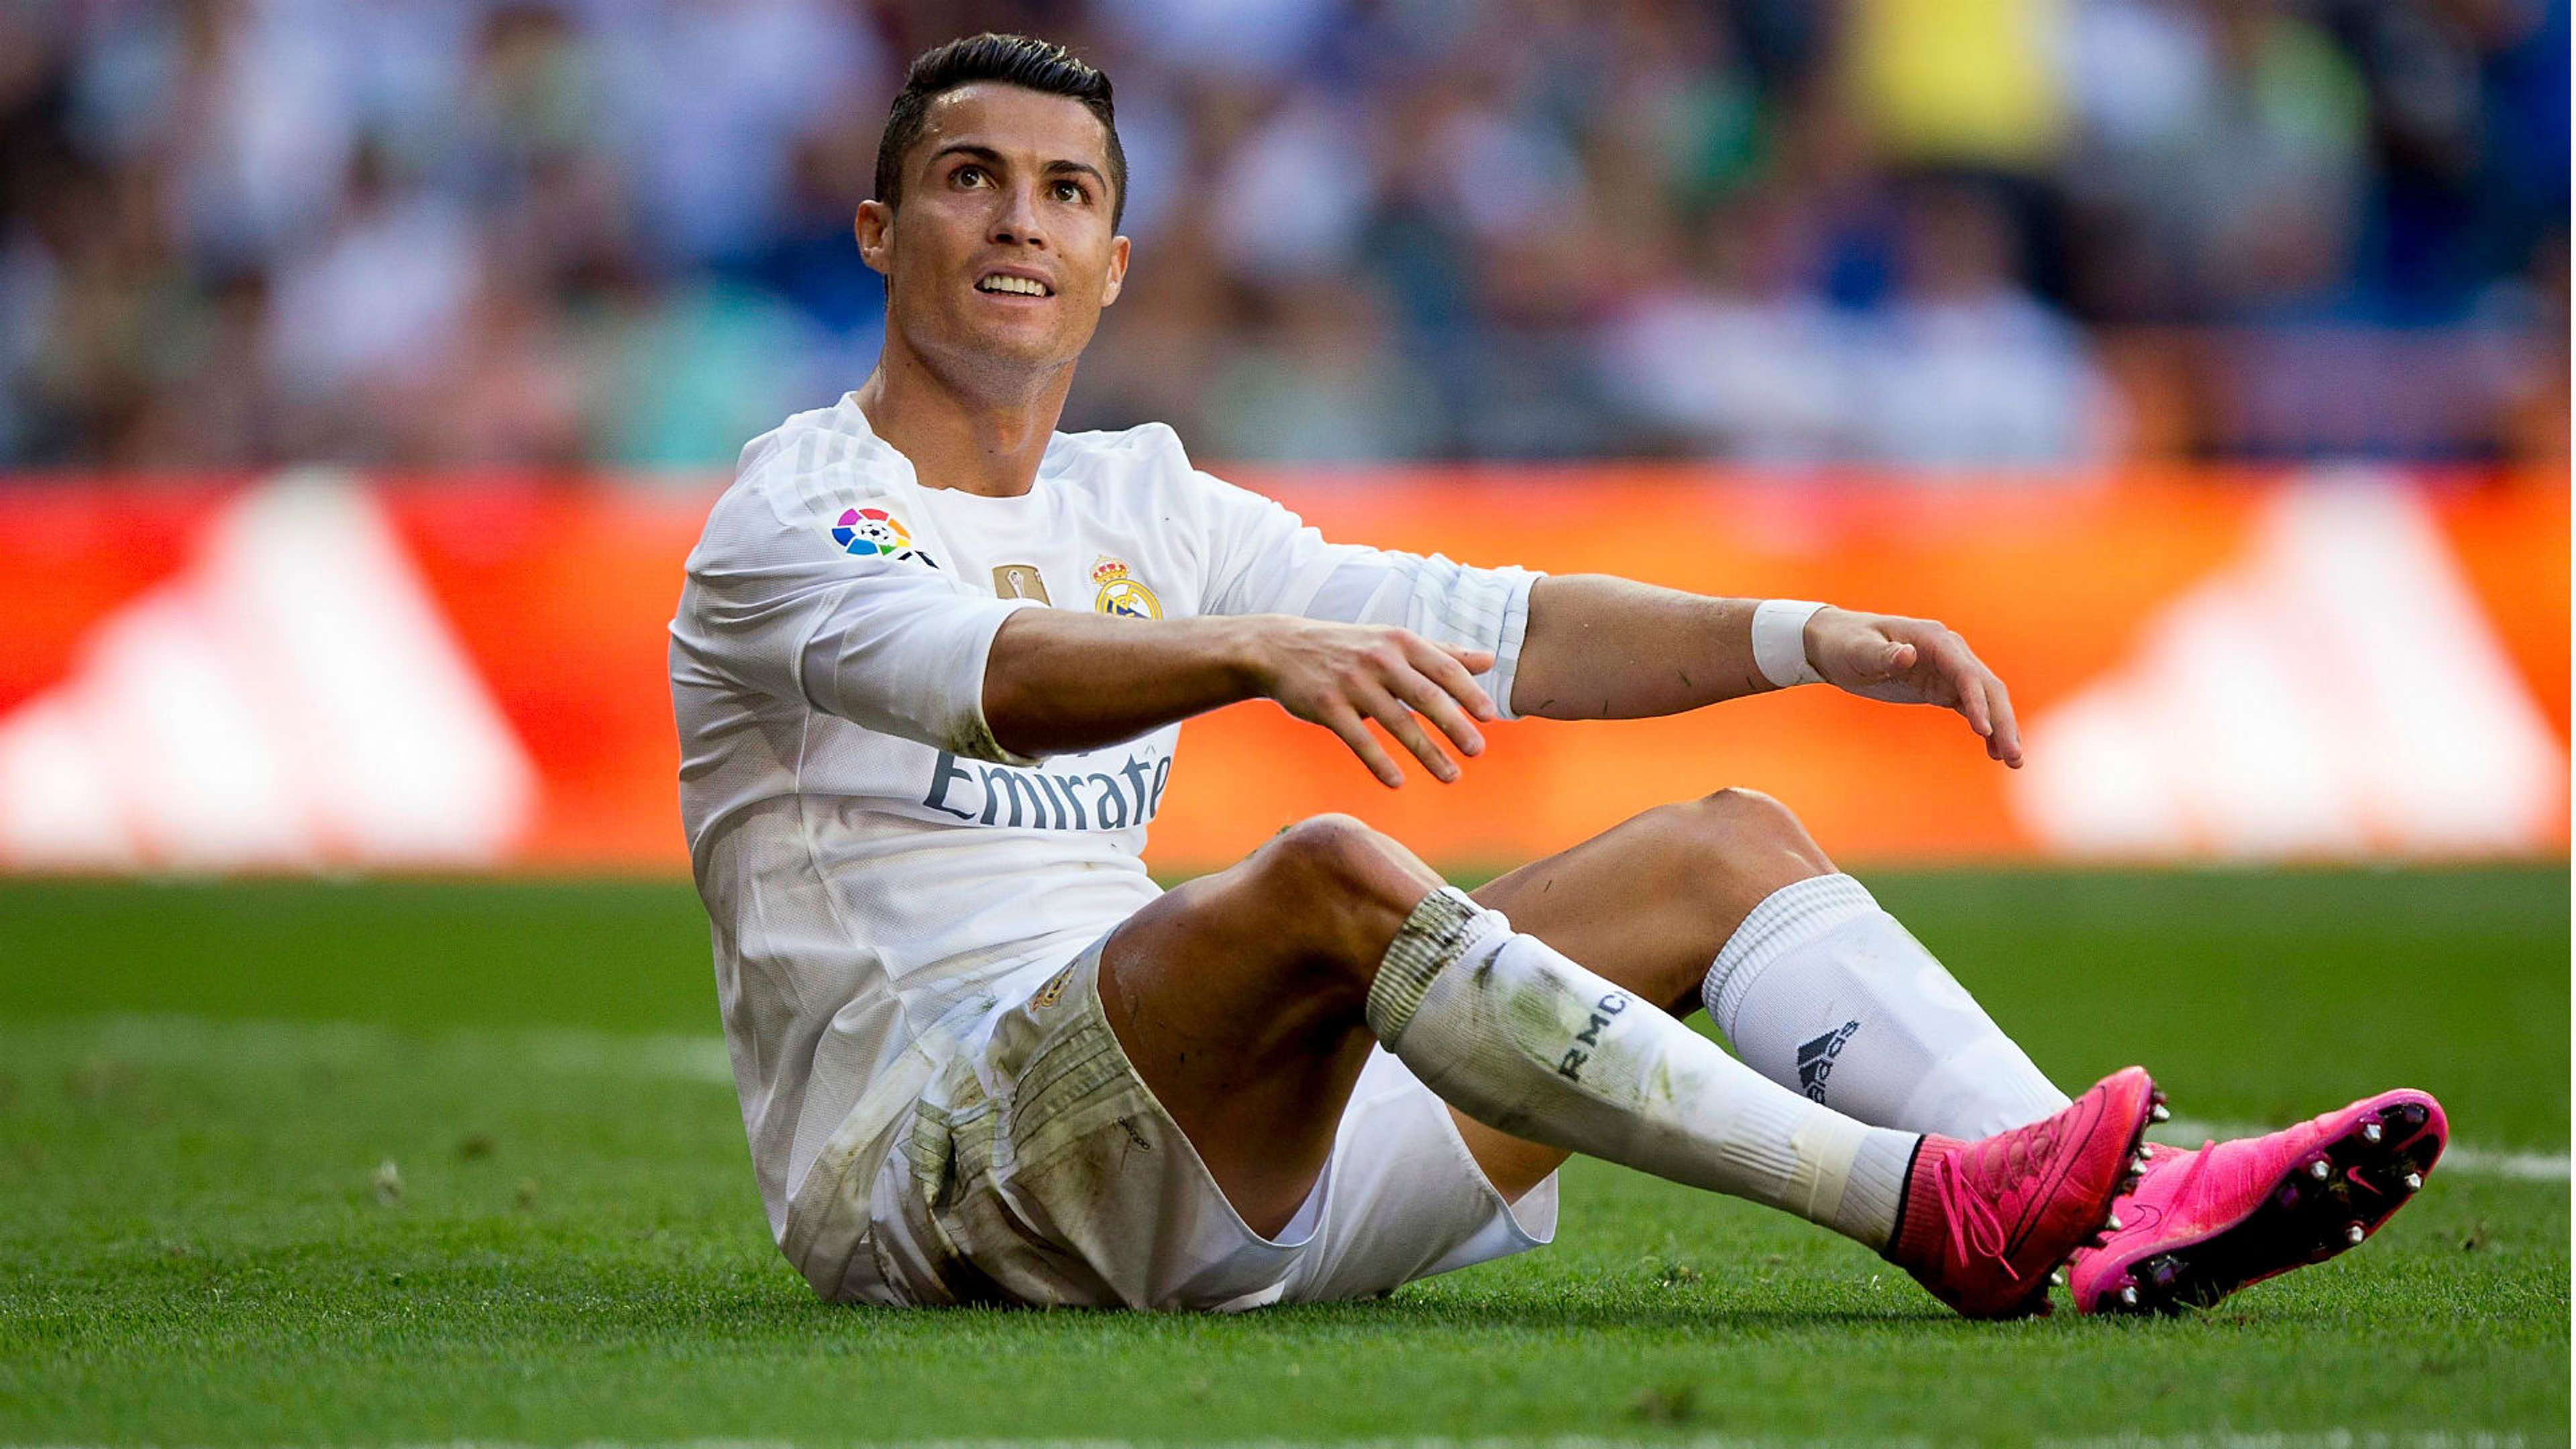 Ronaldo 2015